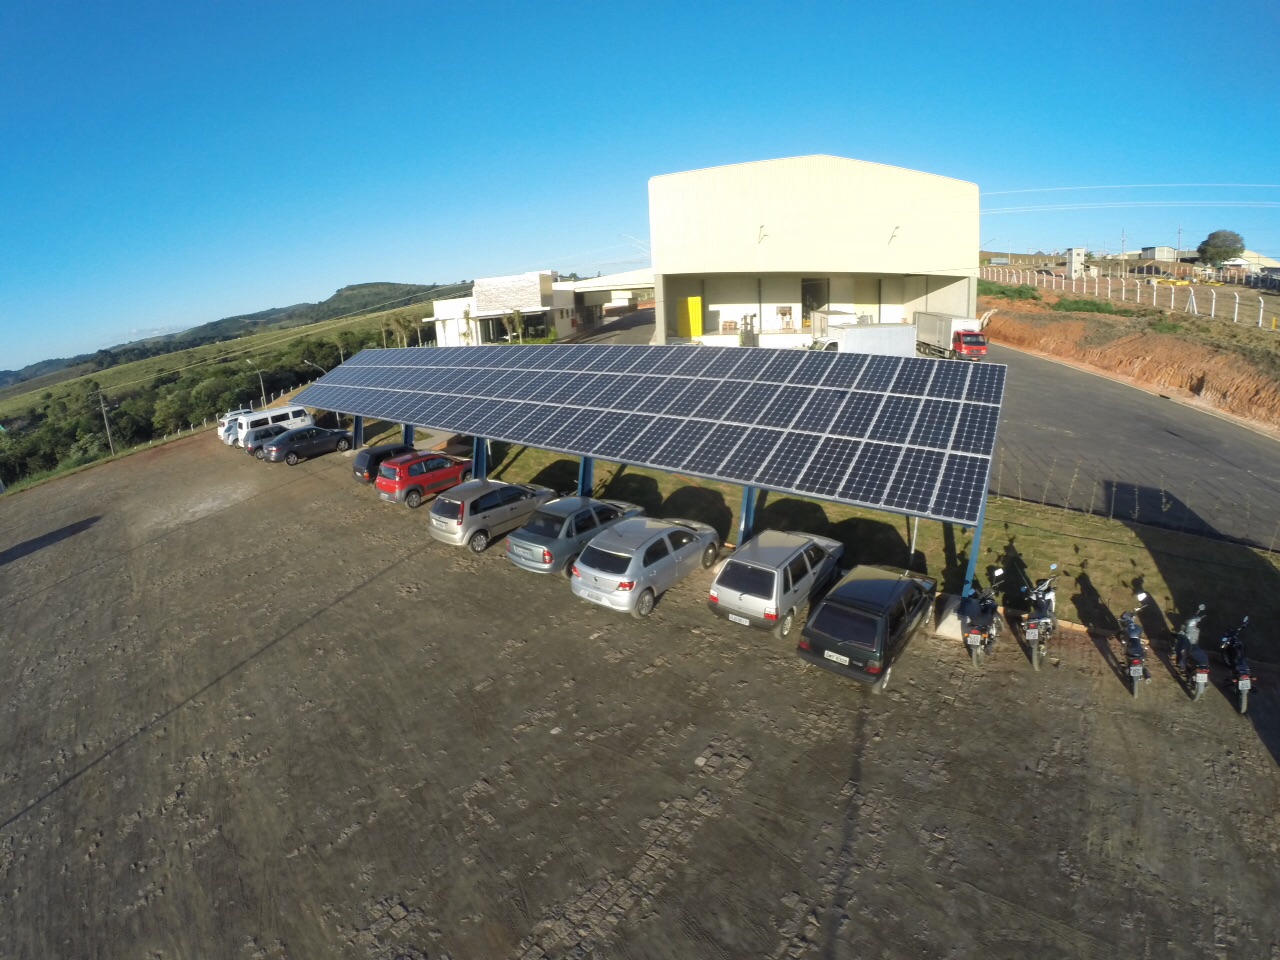 Energia solar industrial